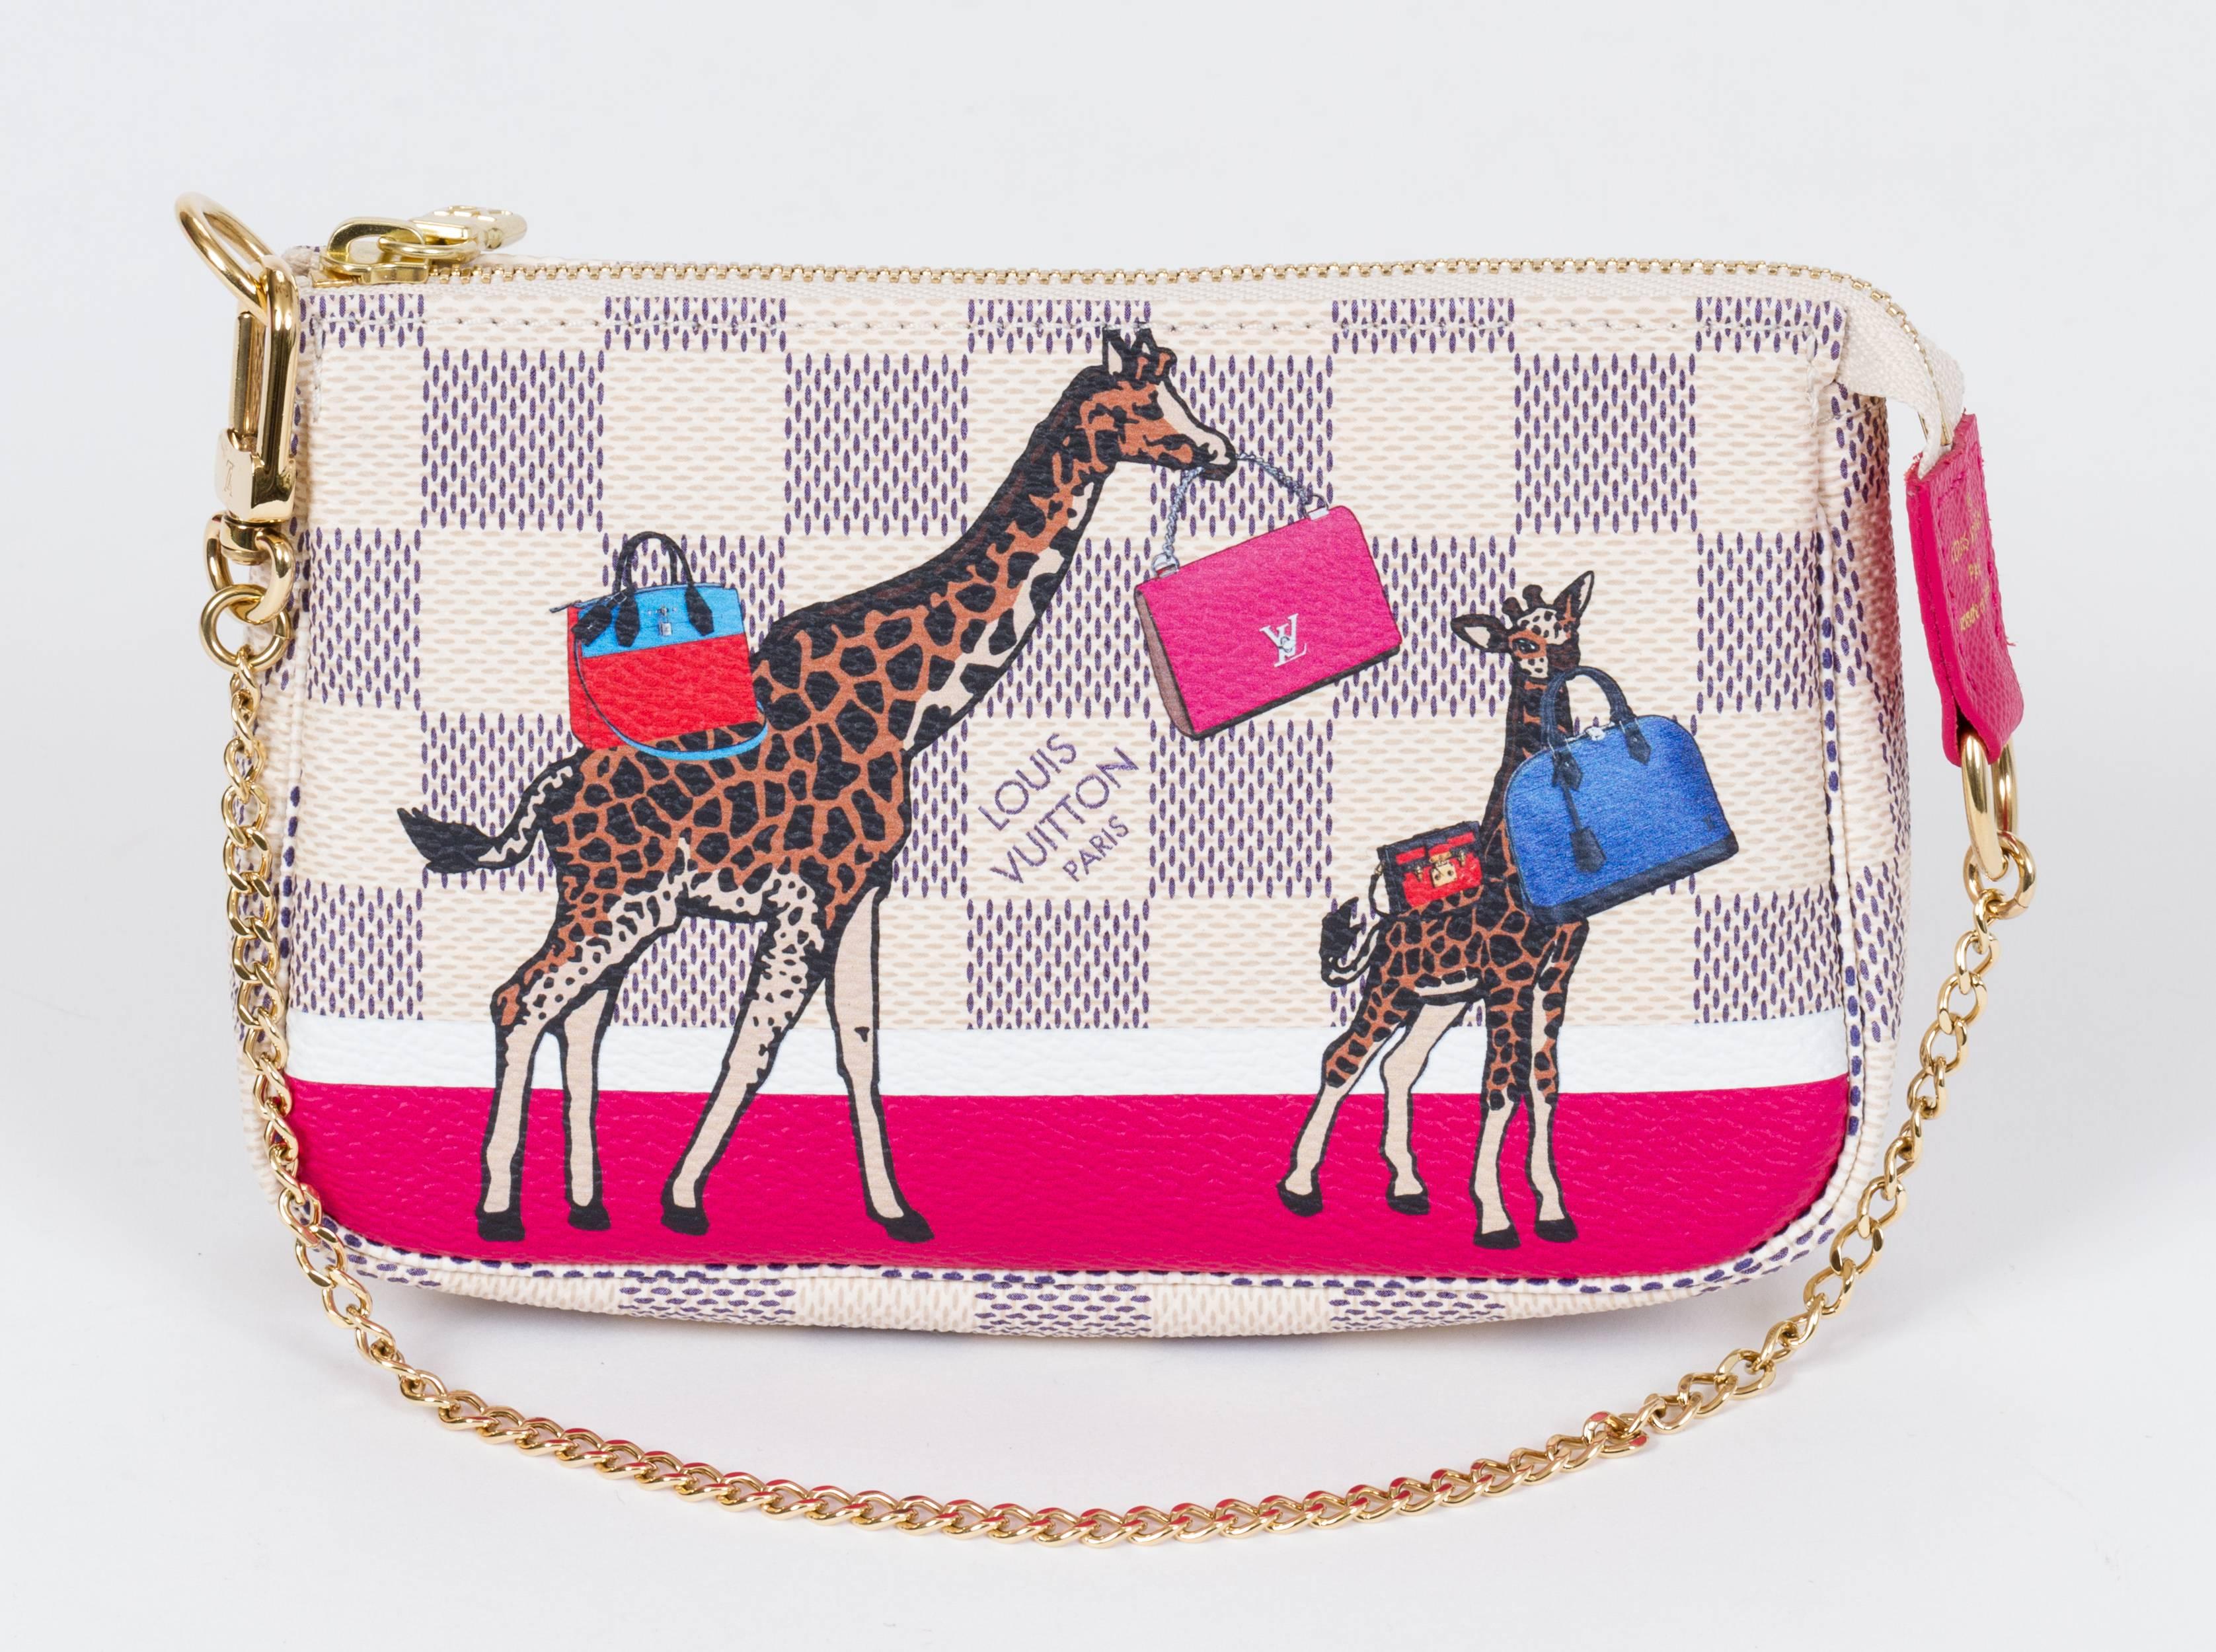 Gray New Vuitton Limited Edition Mini Pouchette Giraffe Bag